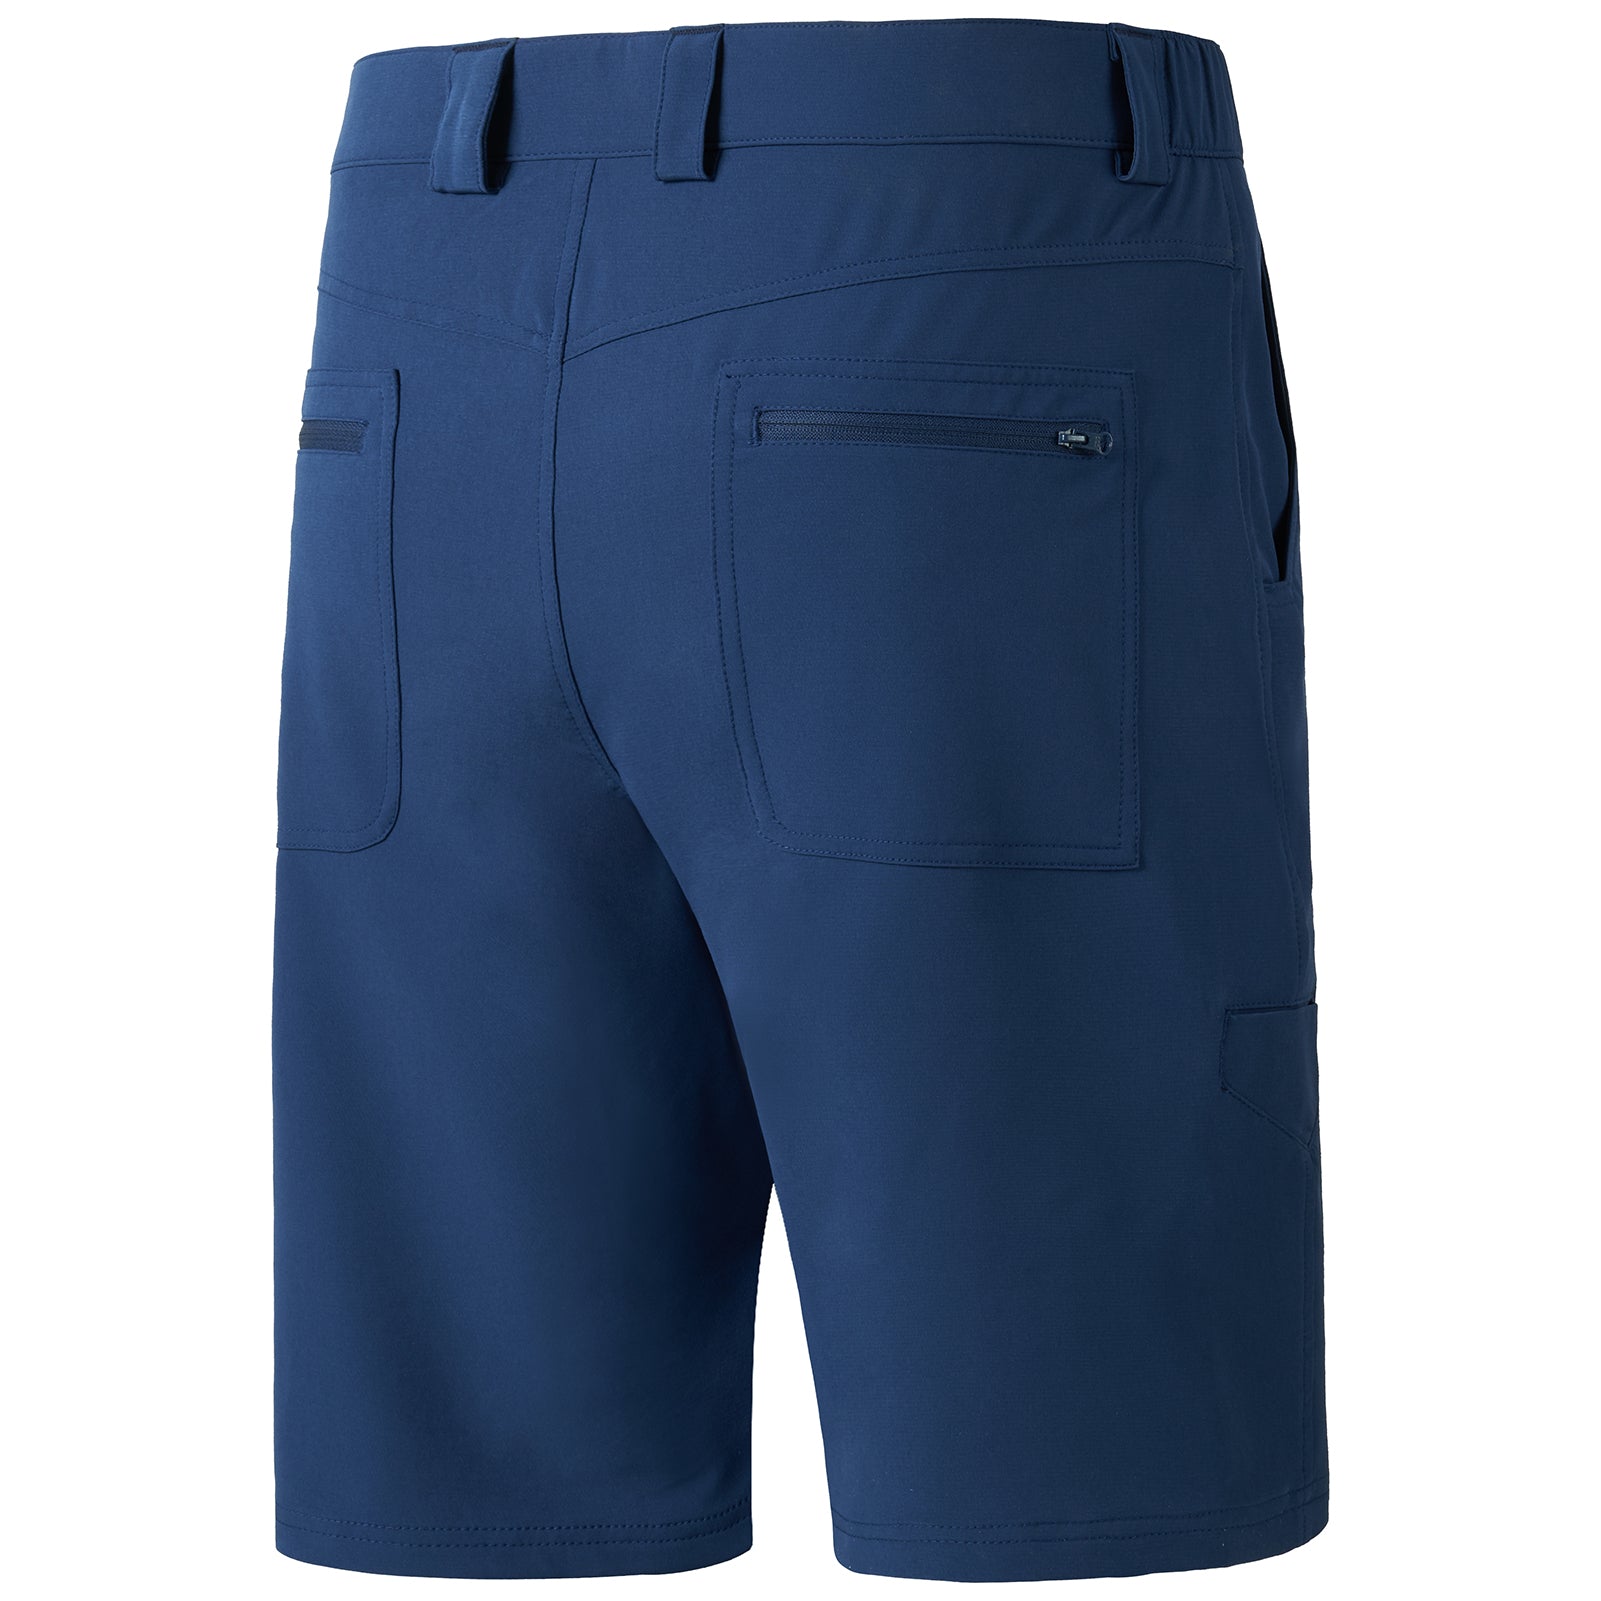 Men's UPF 50+ 10.5” Cargo Shorts Quick Dry Water Resistant FP01M, Aqua Camo / 3XL (41-44)W x 10.5L